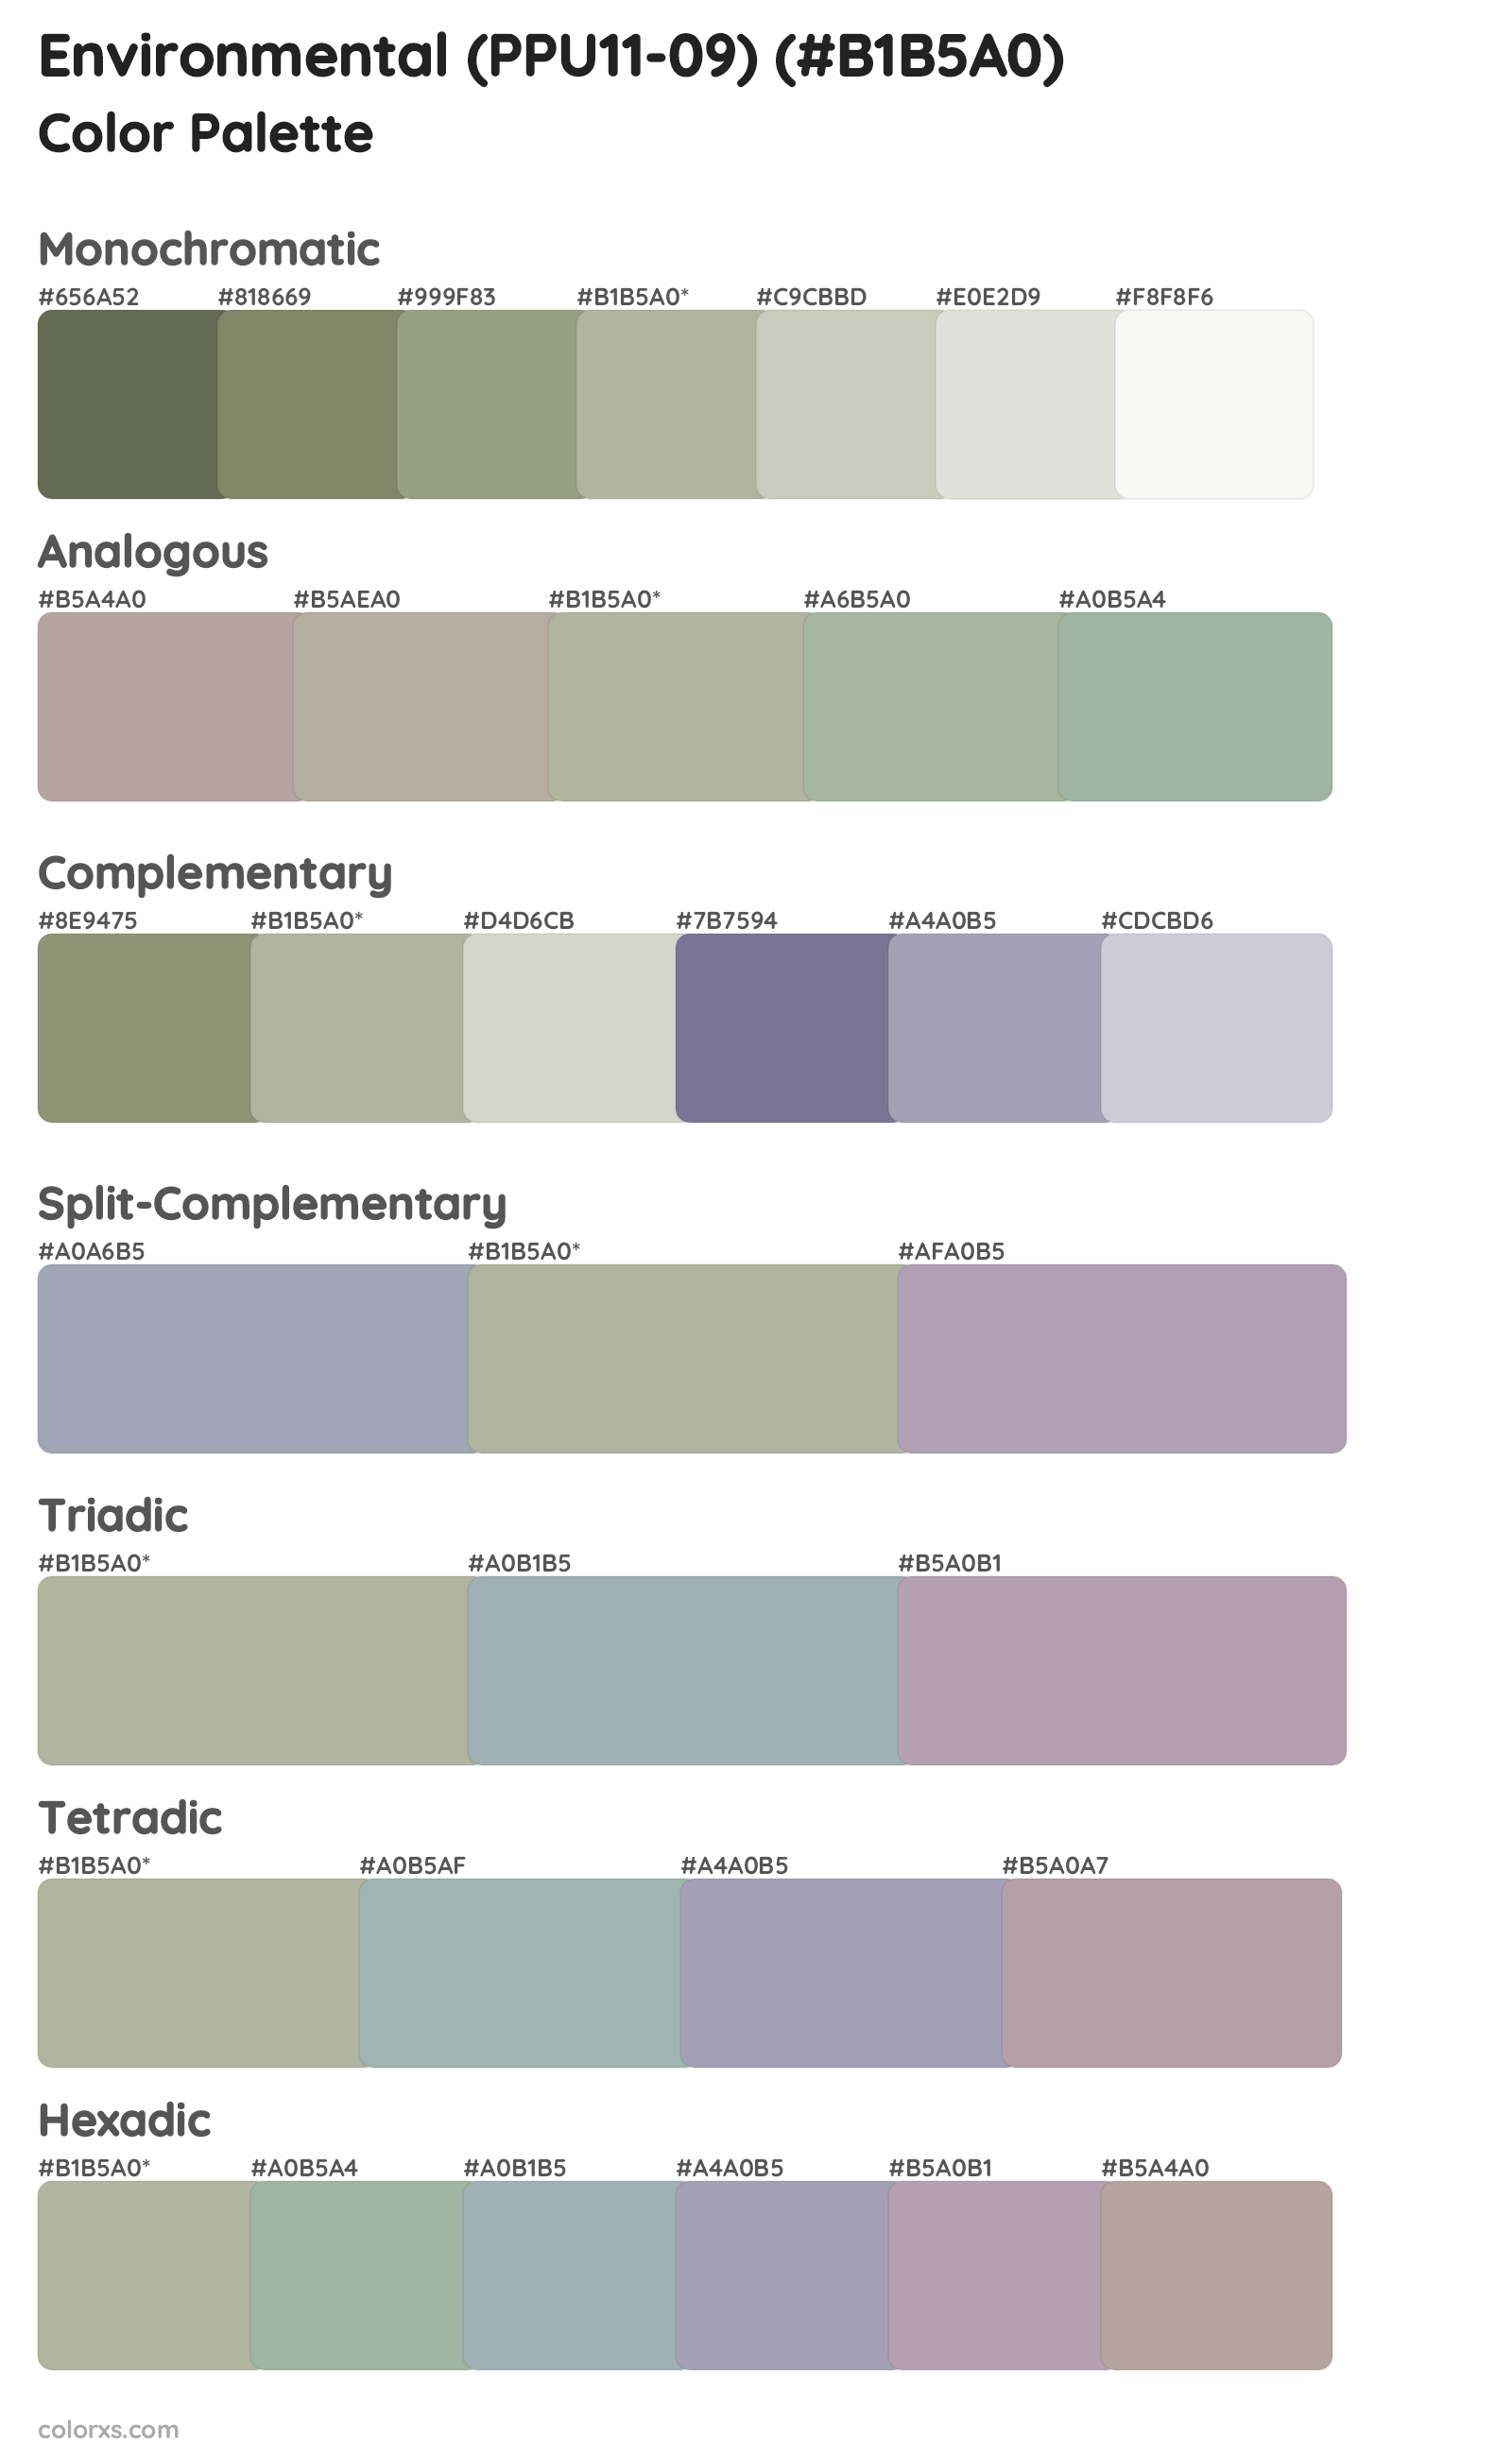 Environmental (PPU11-09) Color Scheme Palettes